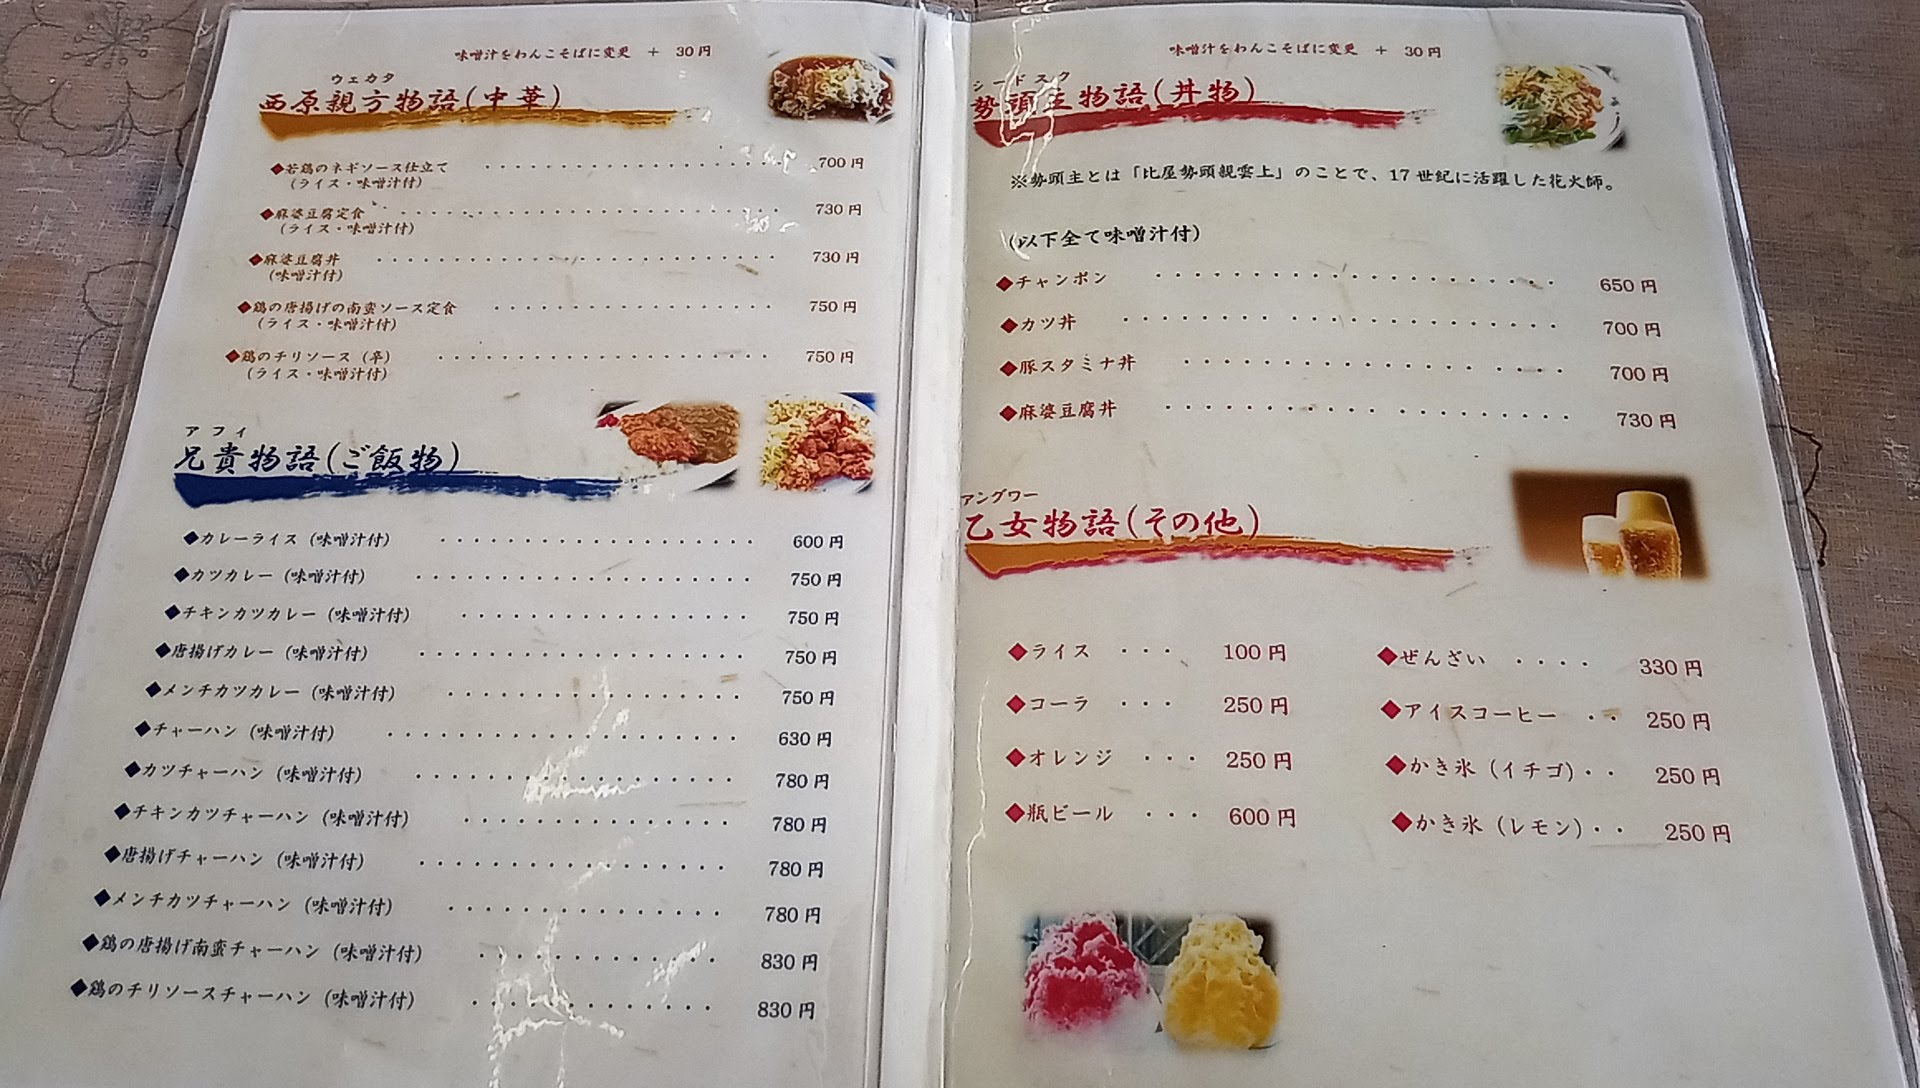 the menu at Untama Shokudou 2